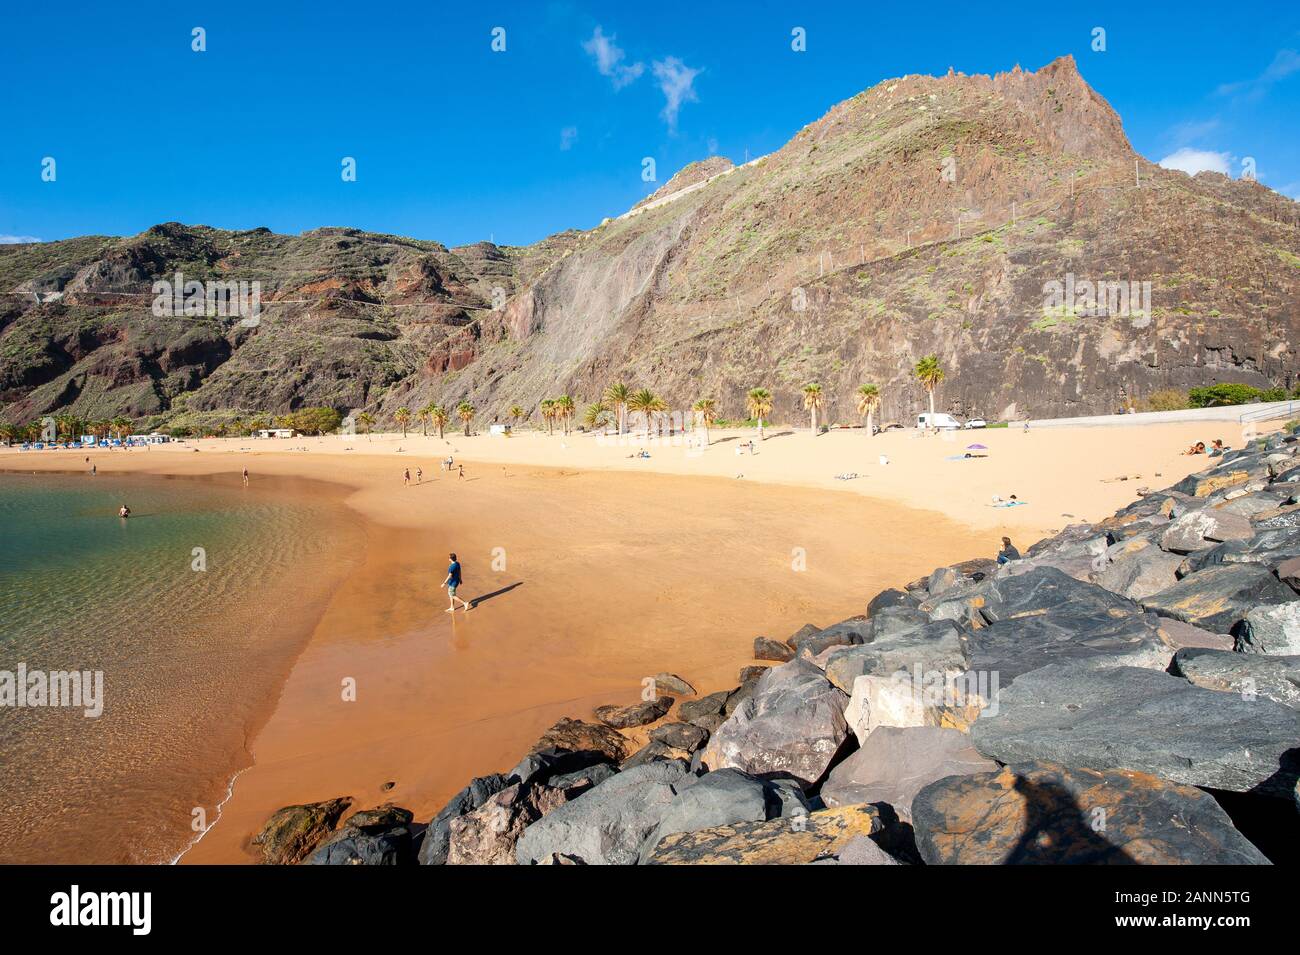 Playa de Las Teresitas è la più bella spiaggia dell'isola Canarie Tenerife. La sabbia bianca è stata spedita dal deserto del Sahara. Foto Stock